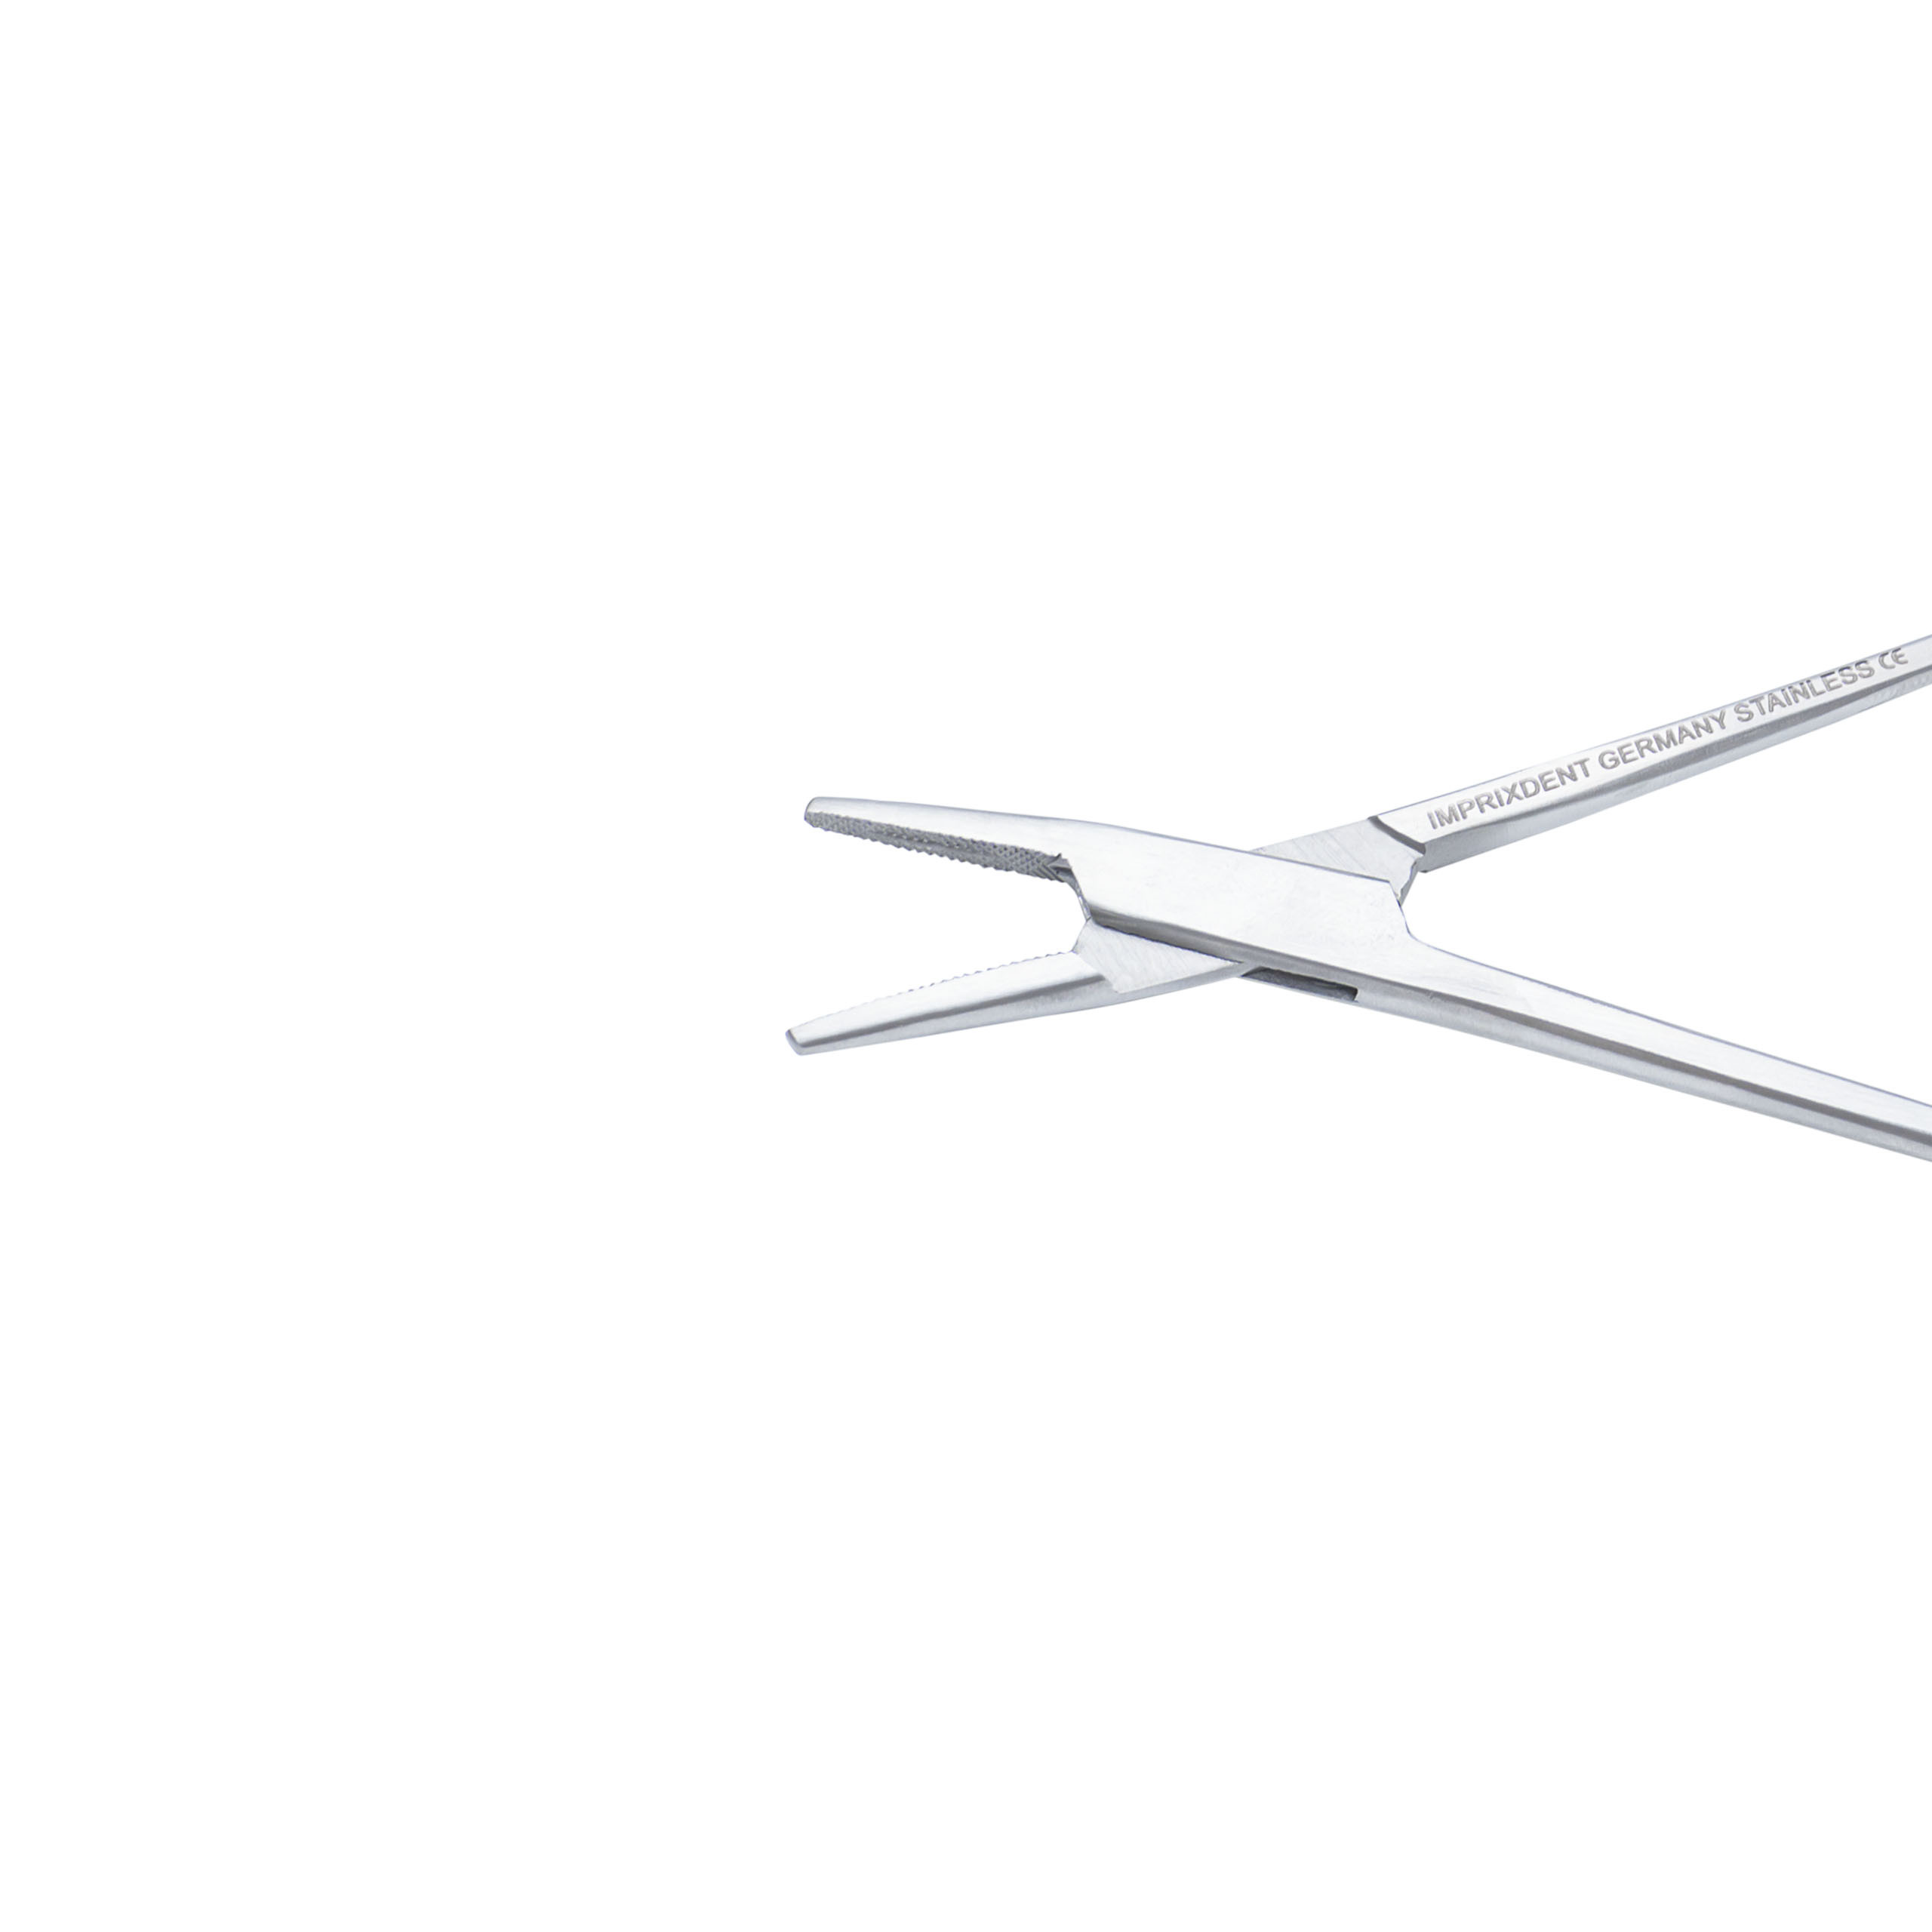 Stainless Steel Needle Holder 6" CVD